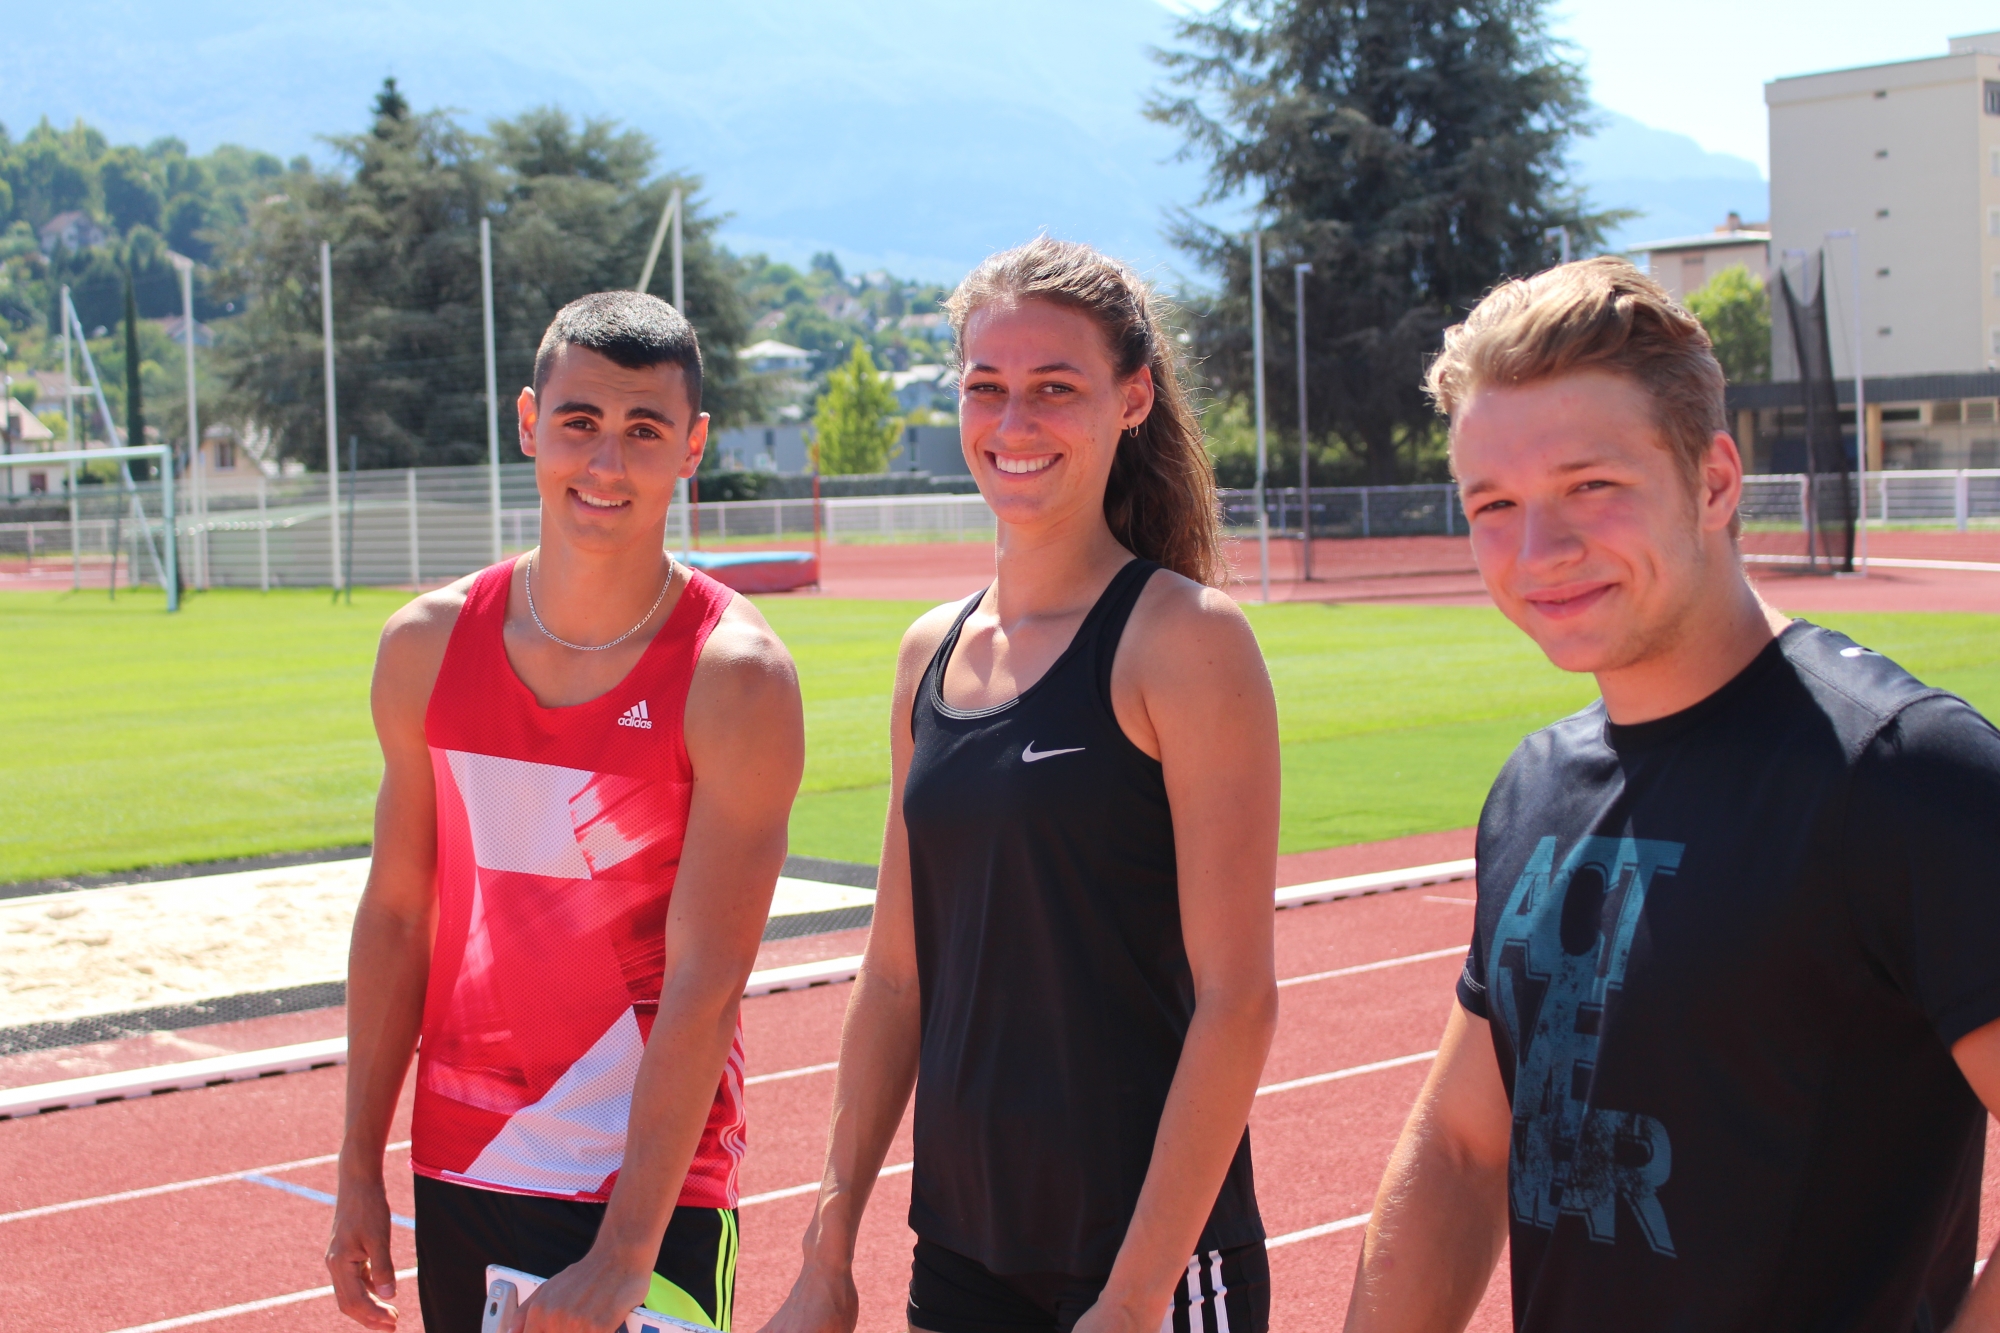 Julien Bonvin, Noémie Salamin et Florent Ramseier représentent les principales chances de médailles aux prochains championnats suisses jeunesse U16/18/20 et 23. Tous trois concourront parmi les moins de vingt ans.